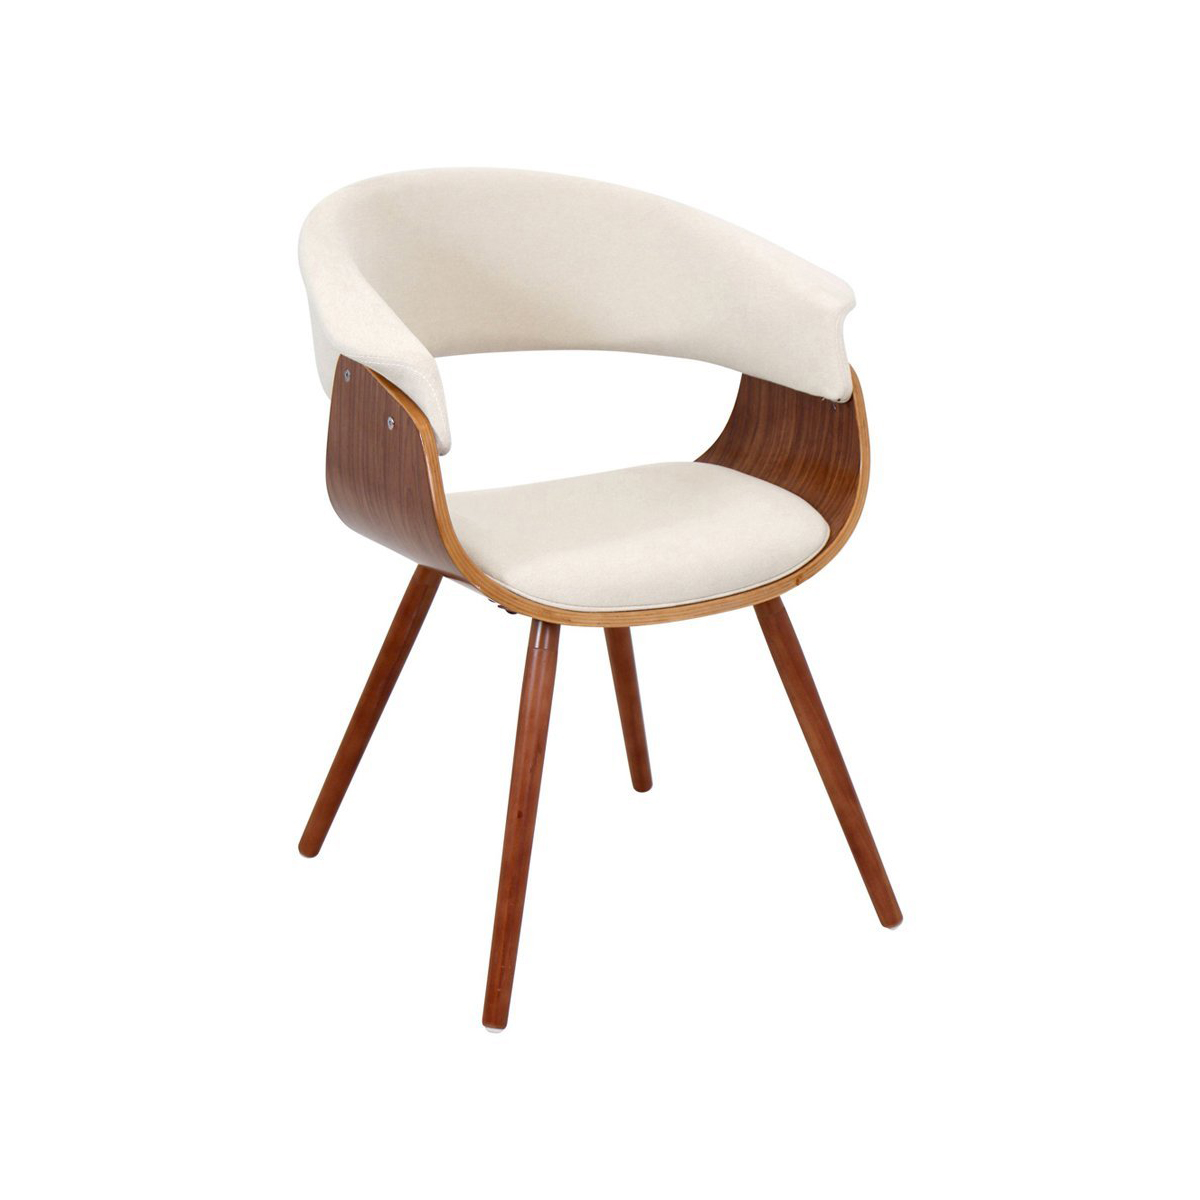 White+Wood Chair Design